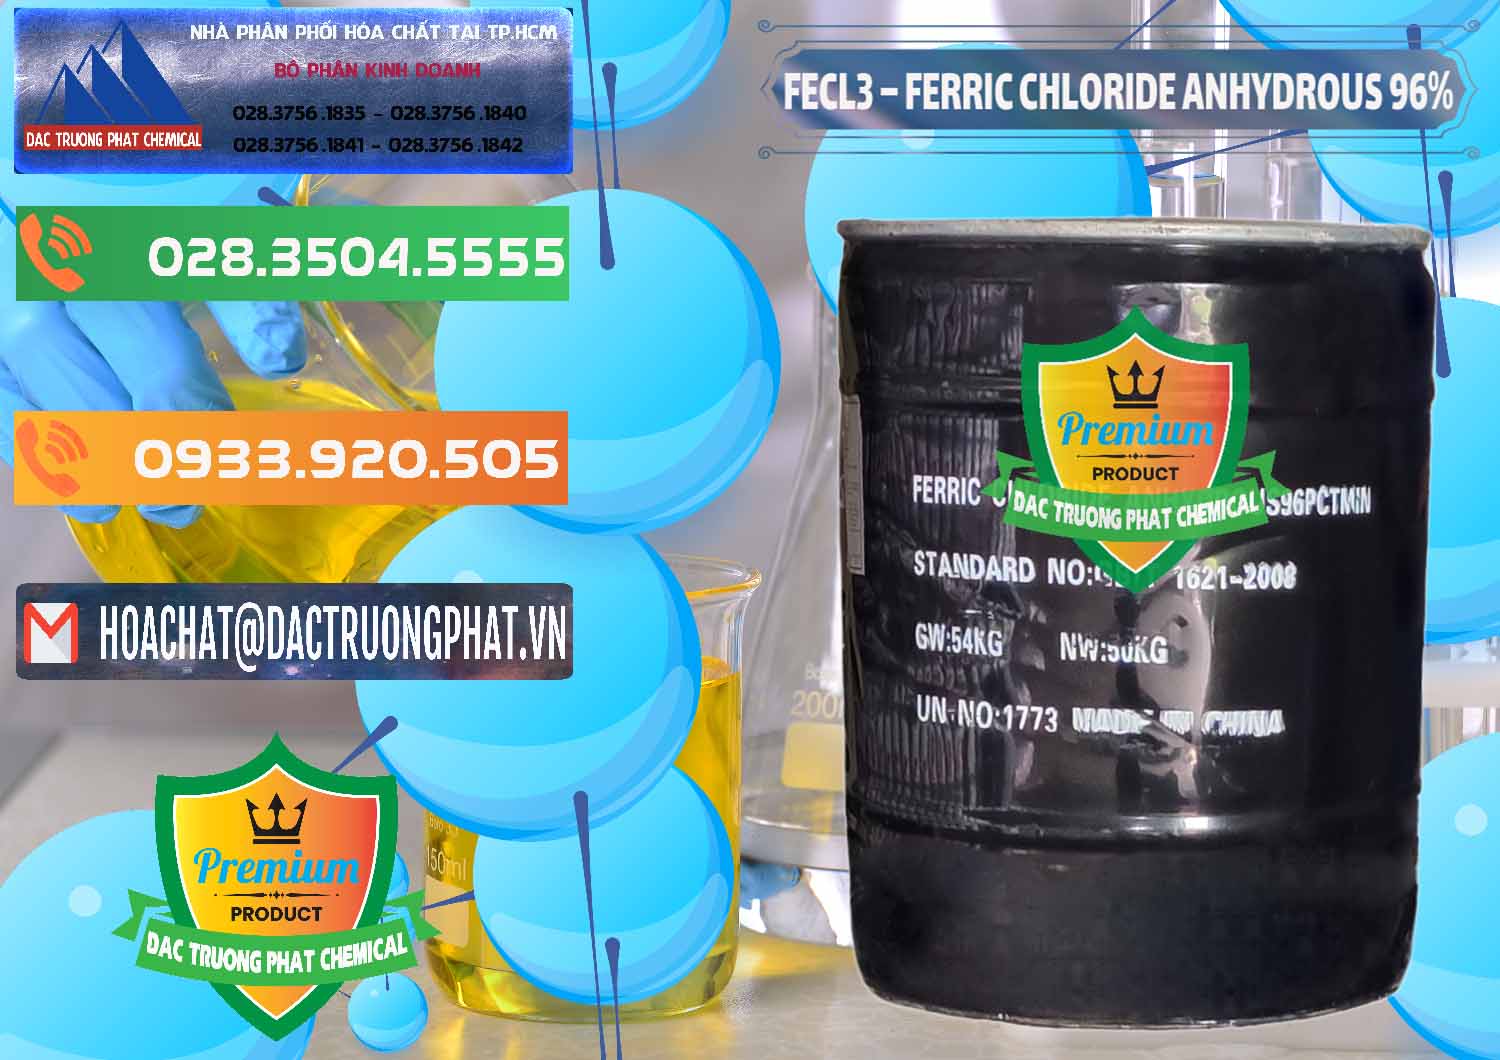 Cty phân phối và bán FECL3 – Ferric Chloride Anhydrous 96% Trung Quốc China - 0065 - Nhà phân phối và cung cấp hóa chất tại TP.HCM - hoachatxulynuoc.com.vn